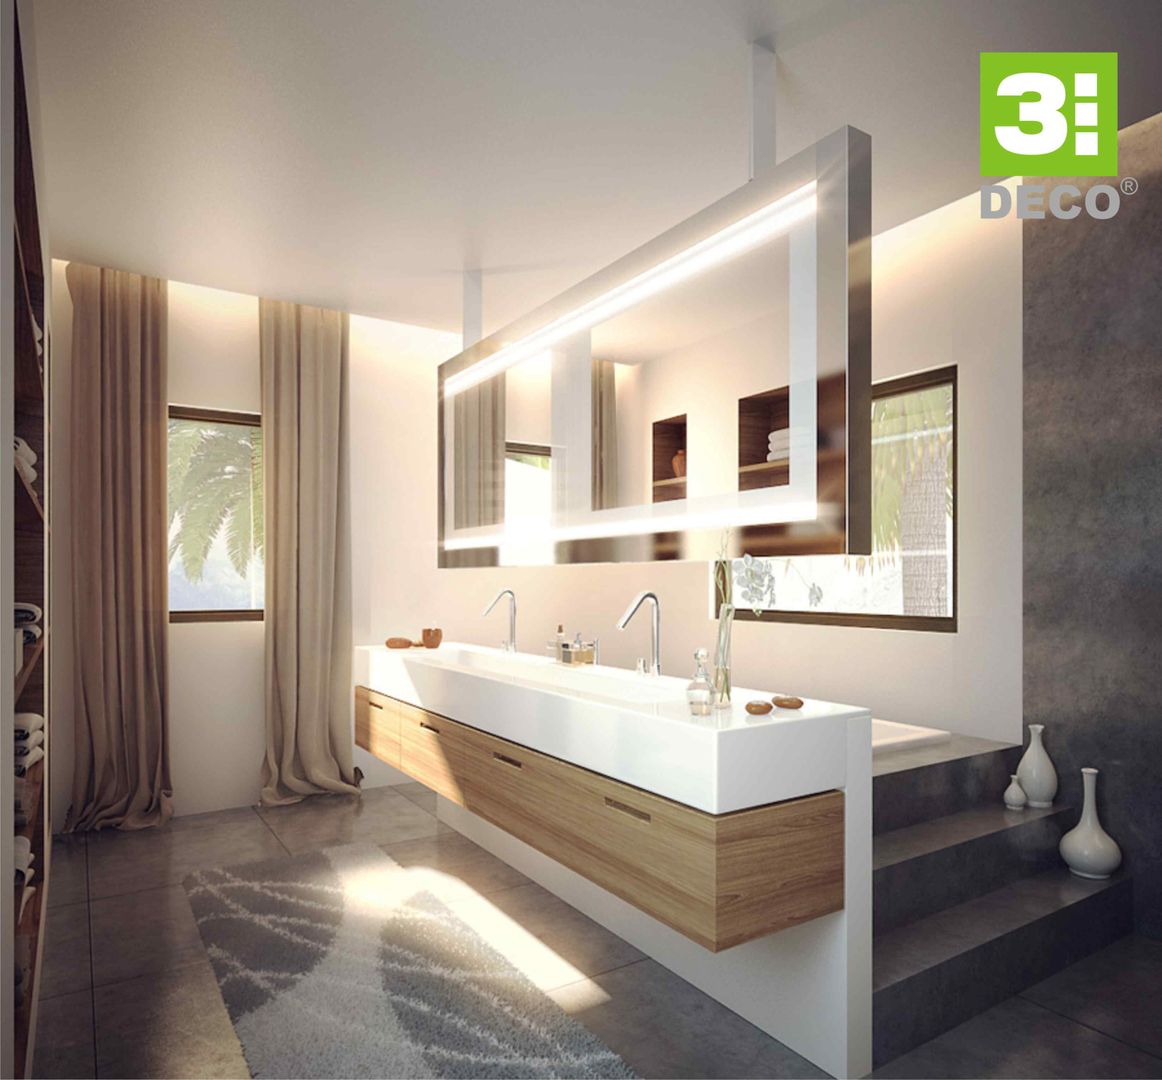 BAÑOS SPA, 3 DECO 3 DECO Ванная комната в стиле минимализм Кварц